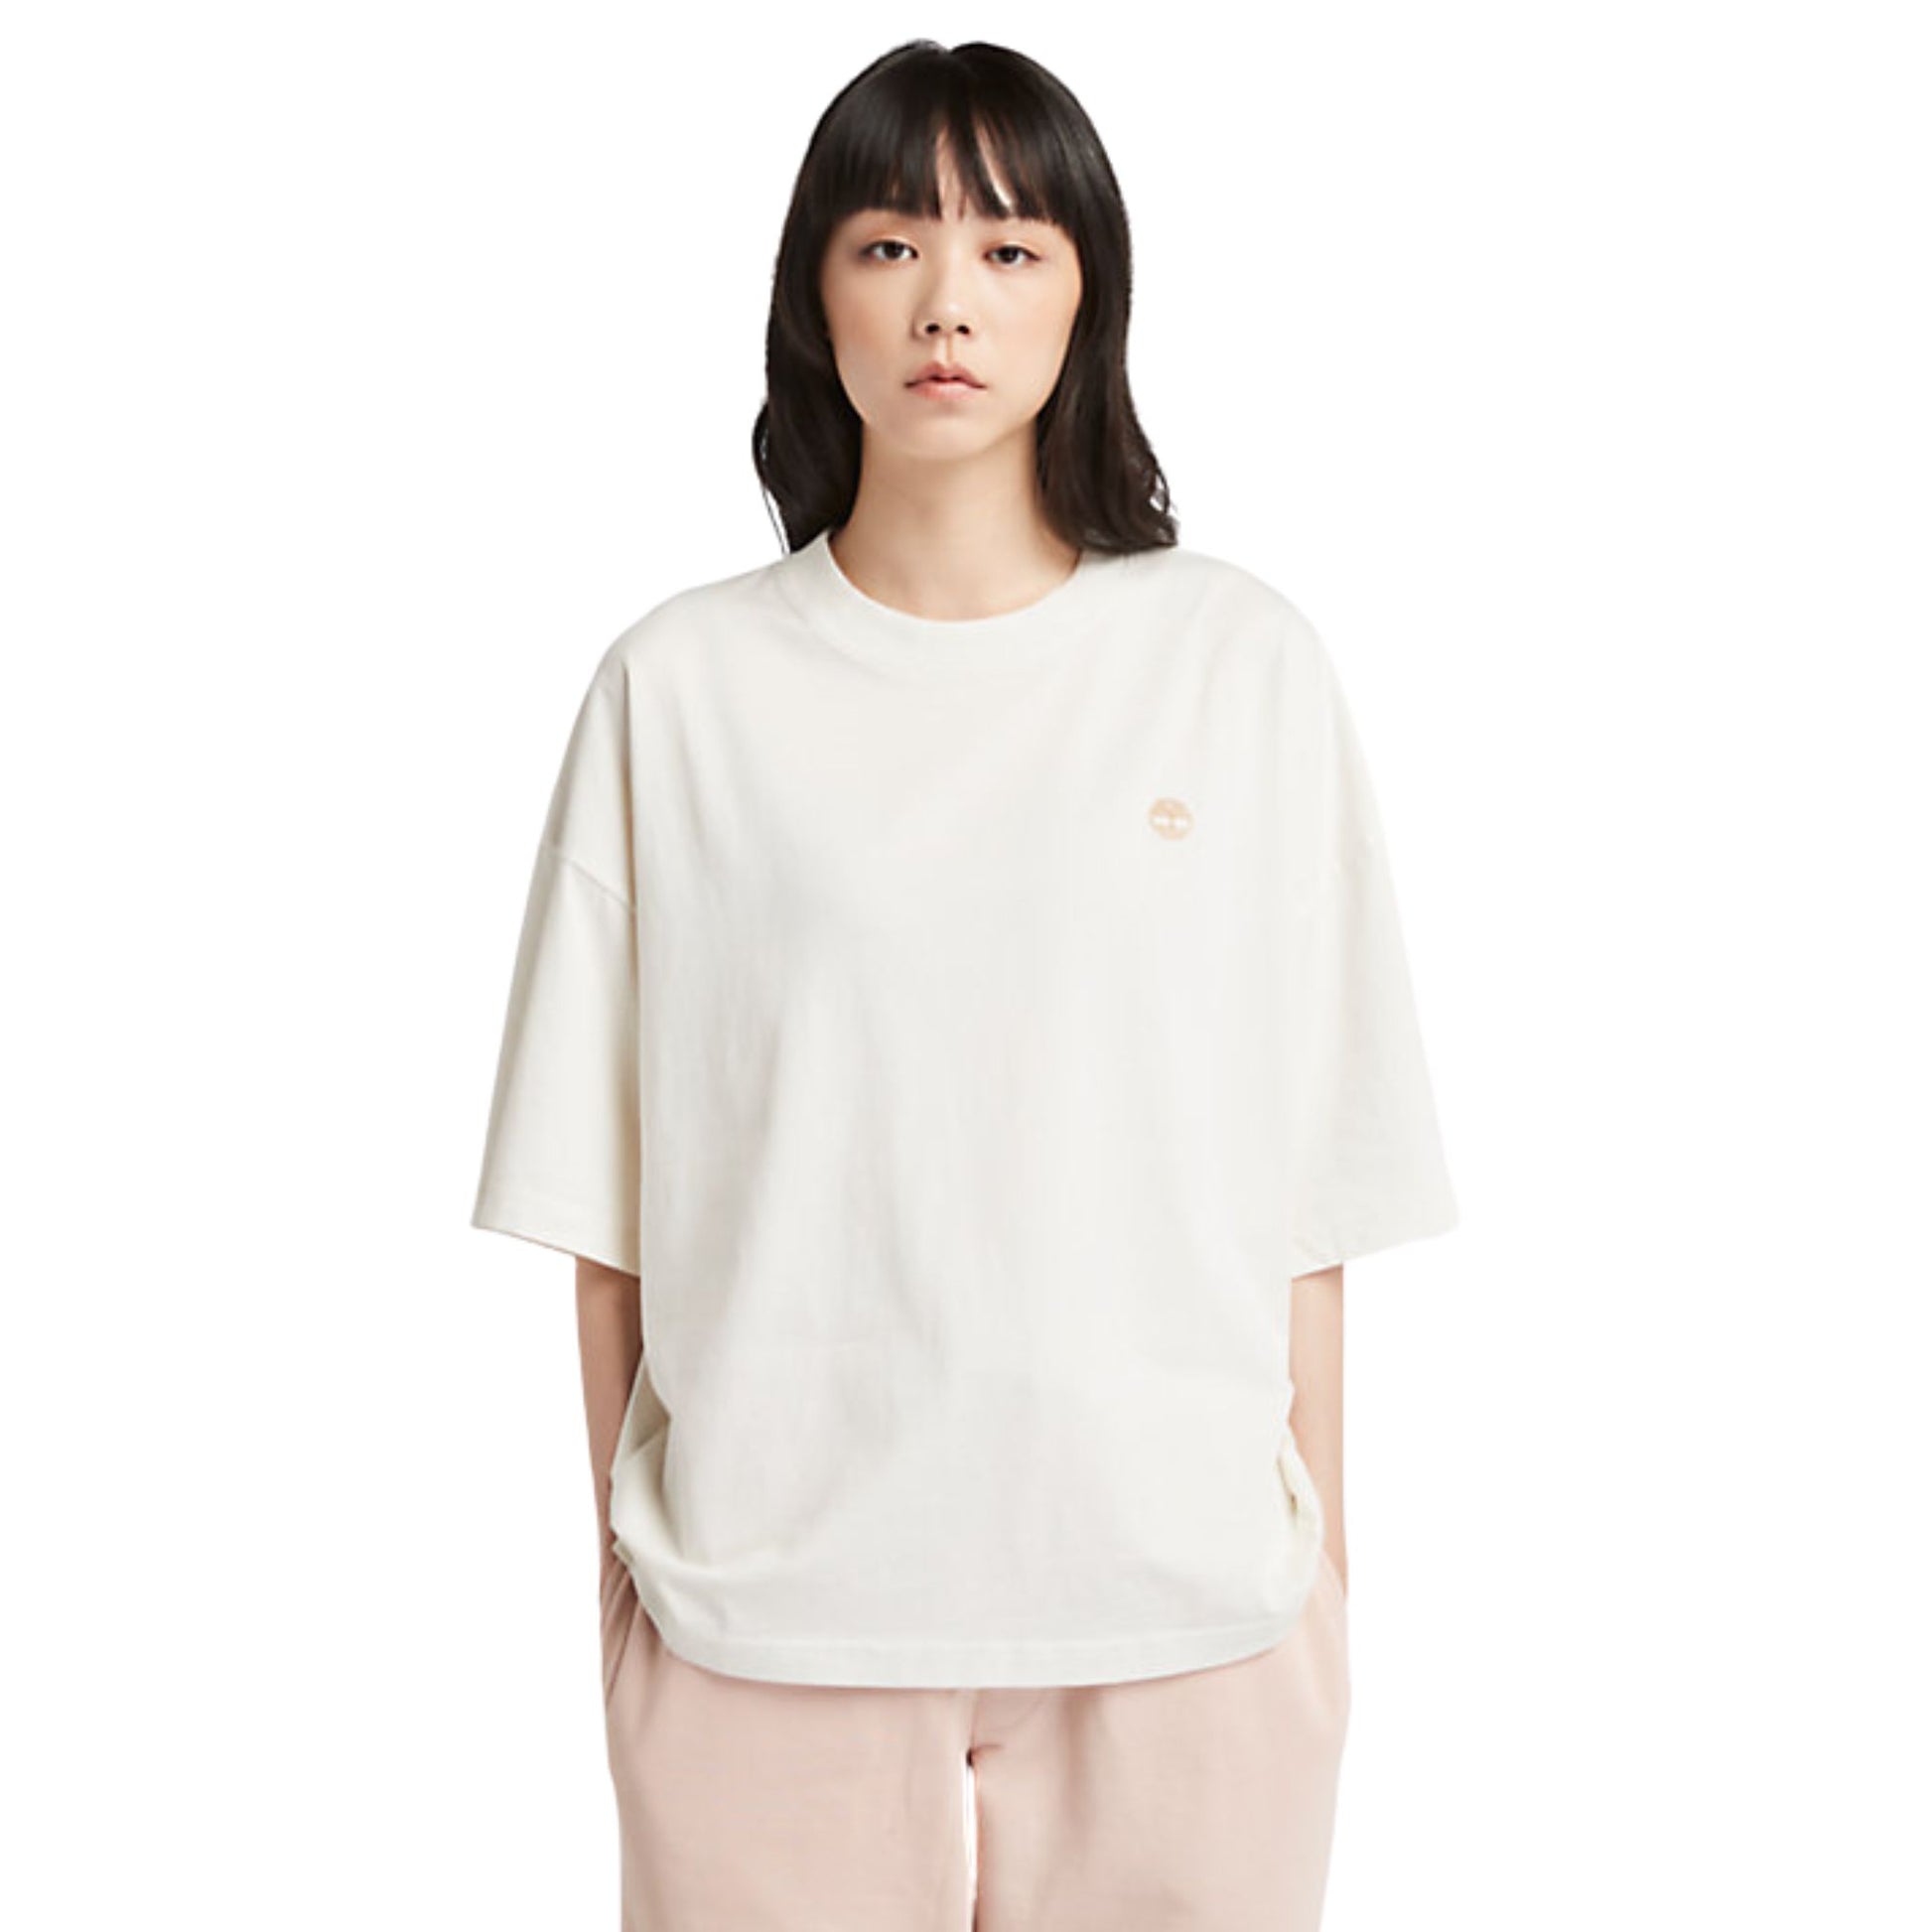 Modella con T-shirt in cotone oversize colore Bianco